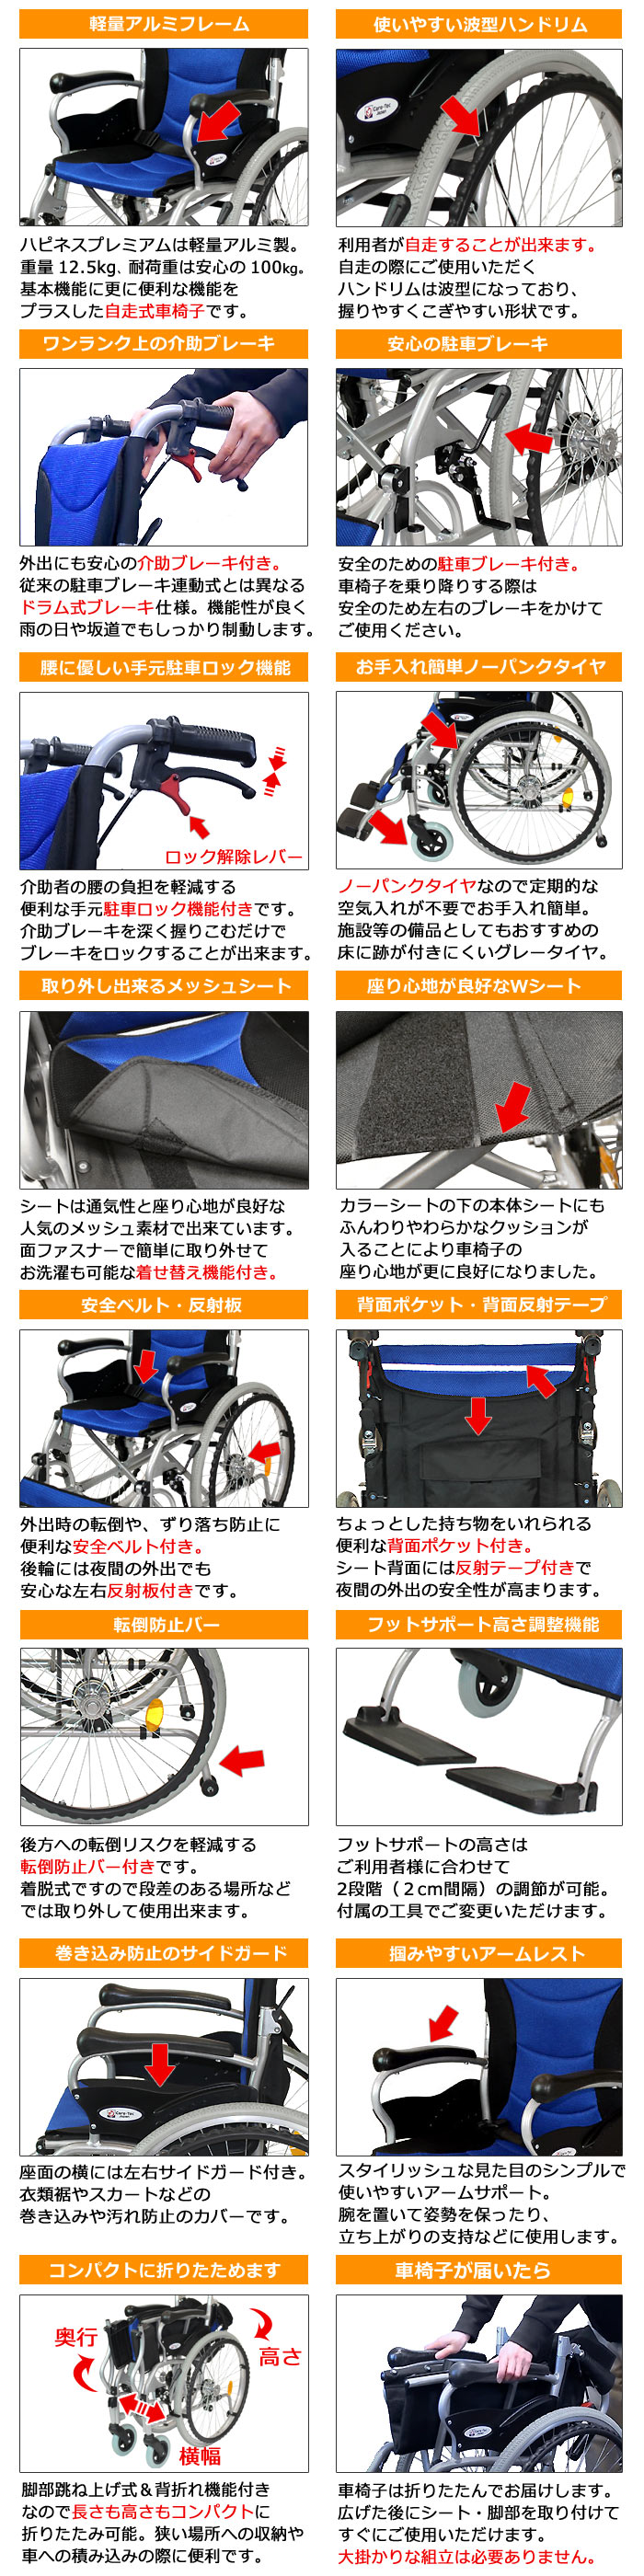 【ケアテックジャパン】 自走式車椅子 ハピネスプレミアム CA-32SU 画像3